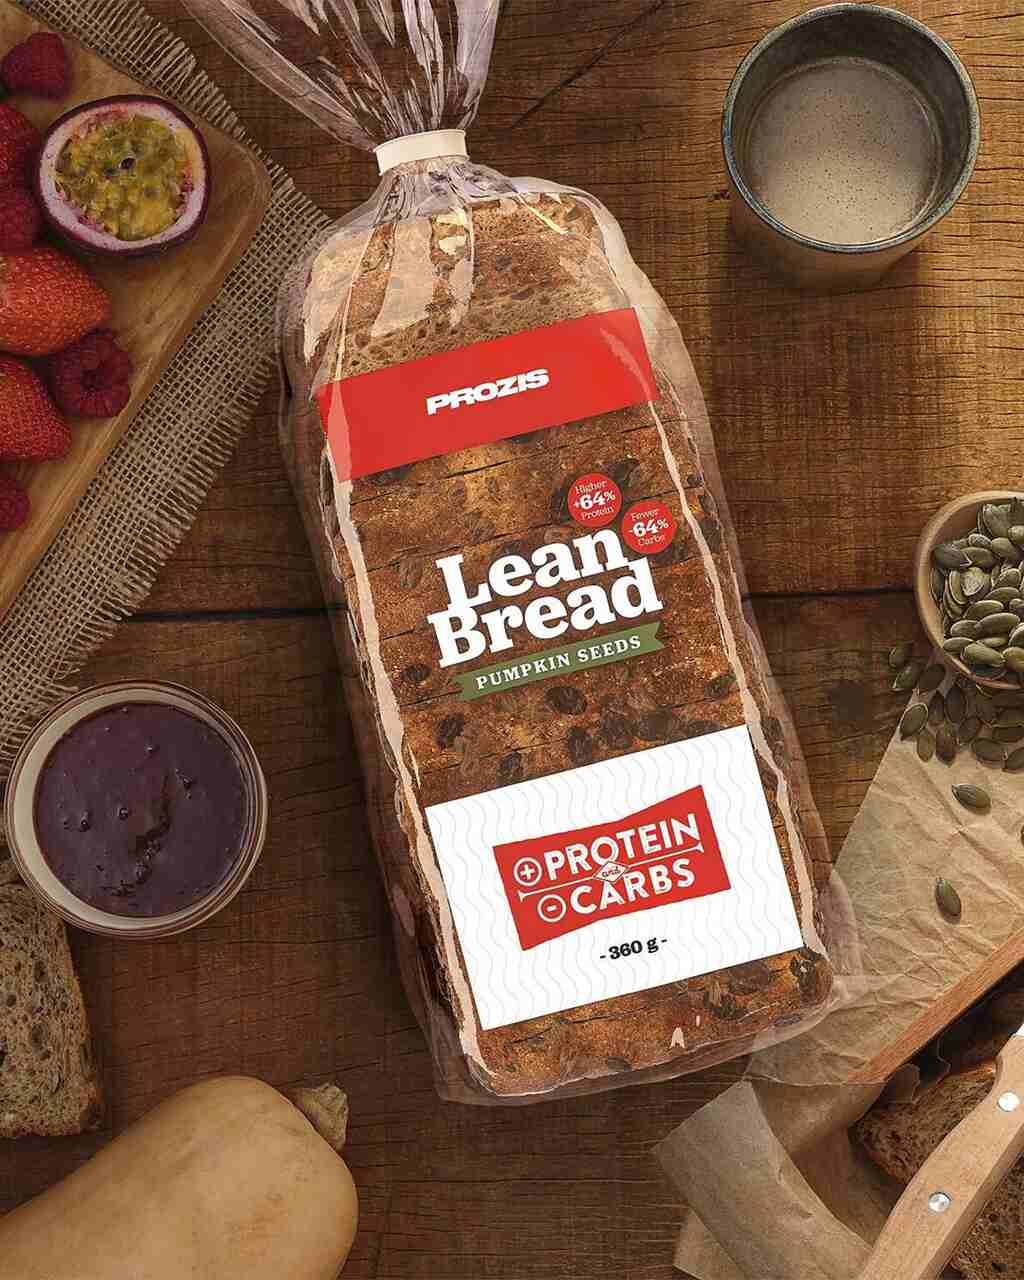 Pan de lino, lean bread, prozis pan